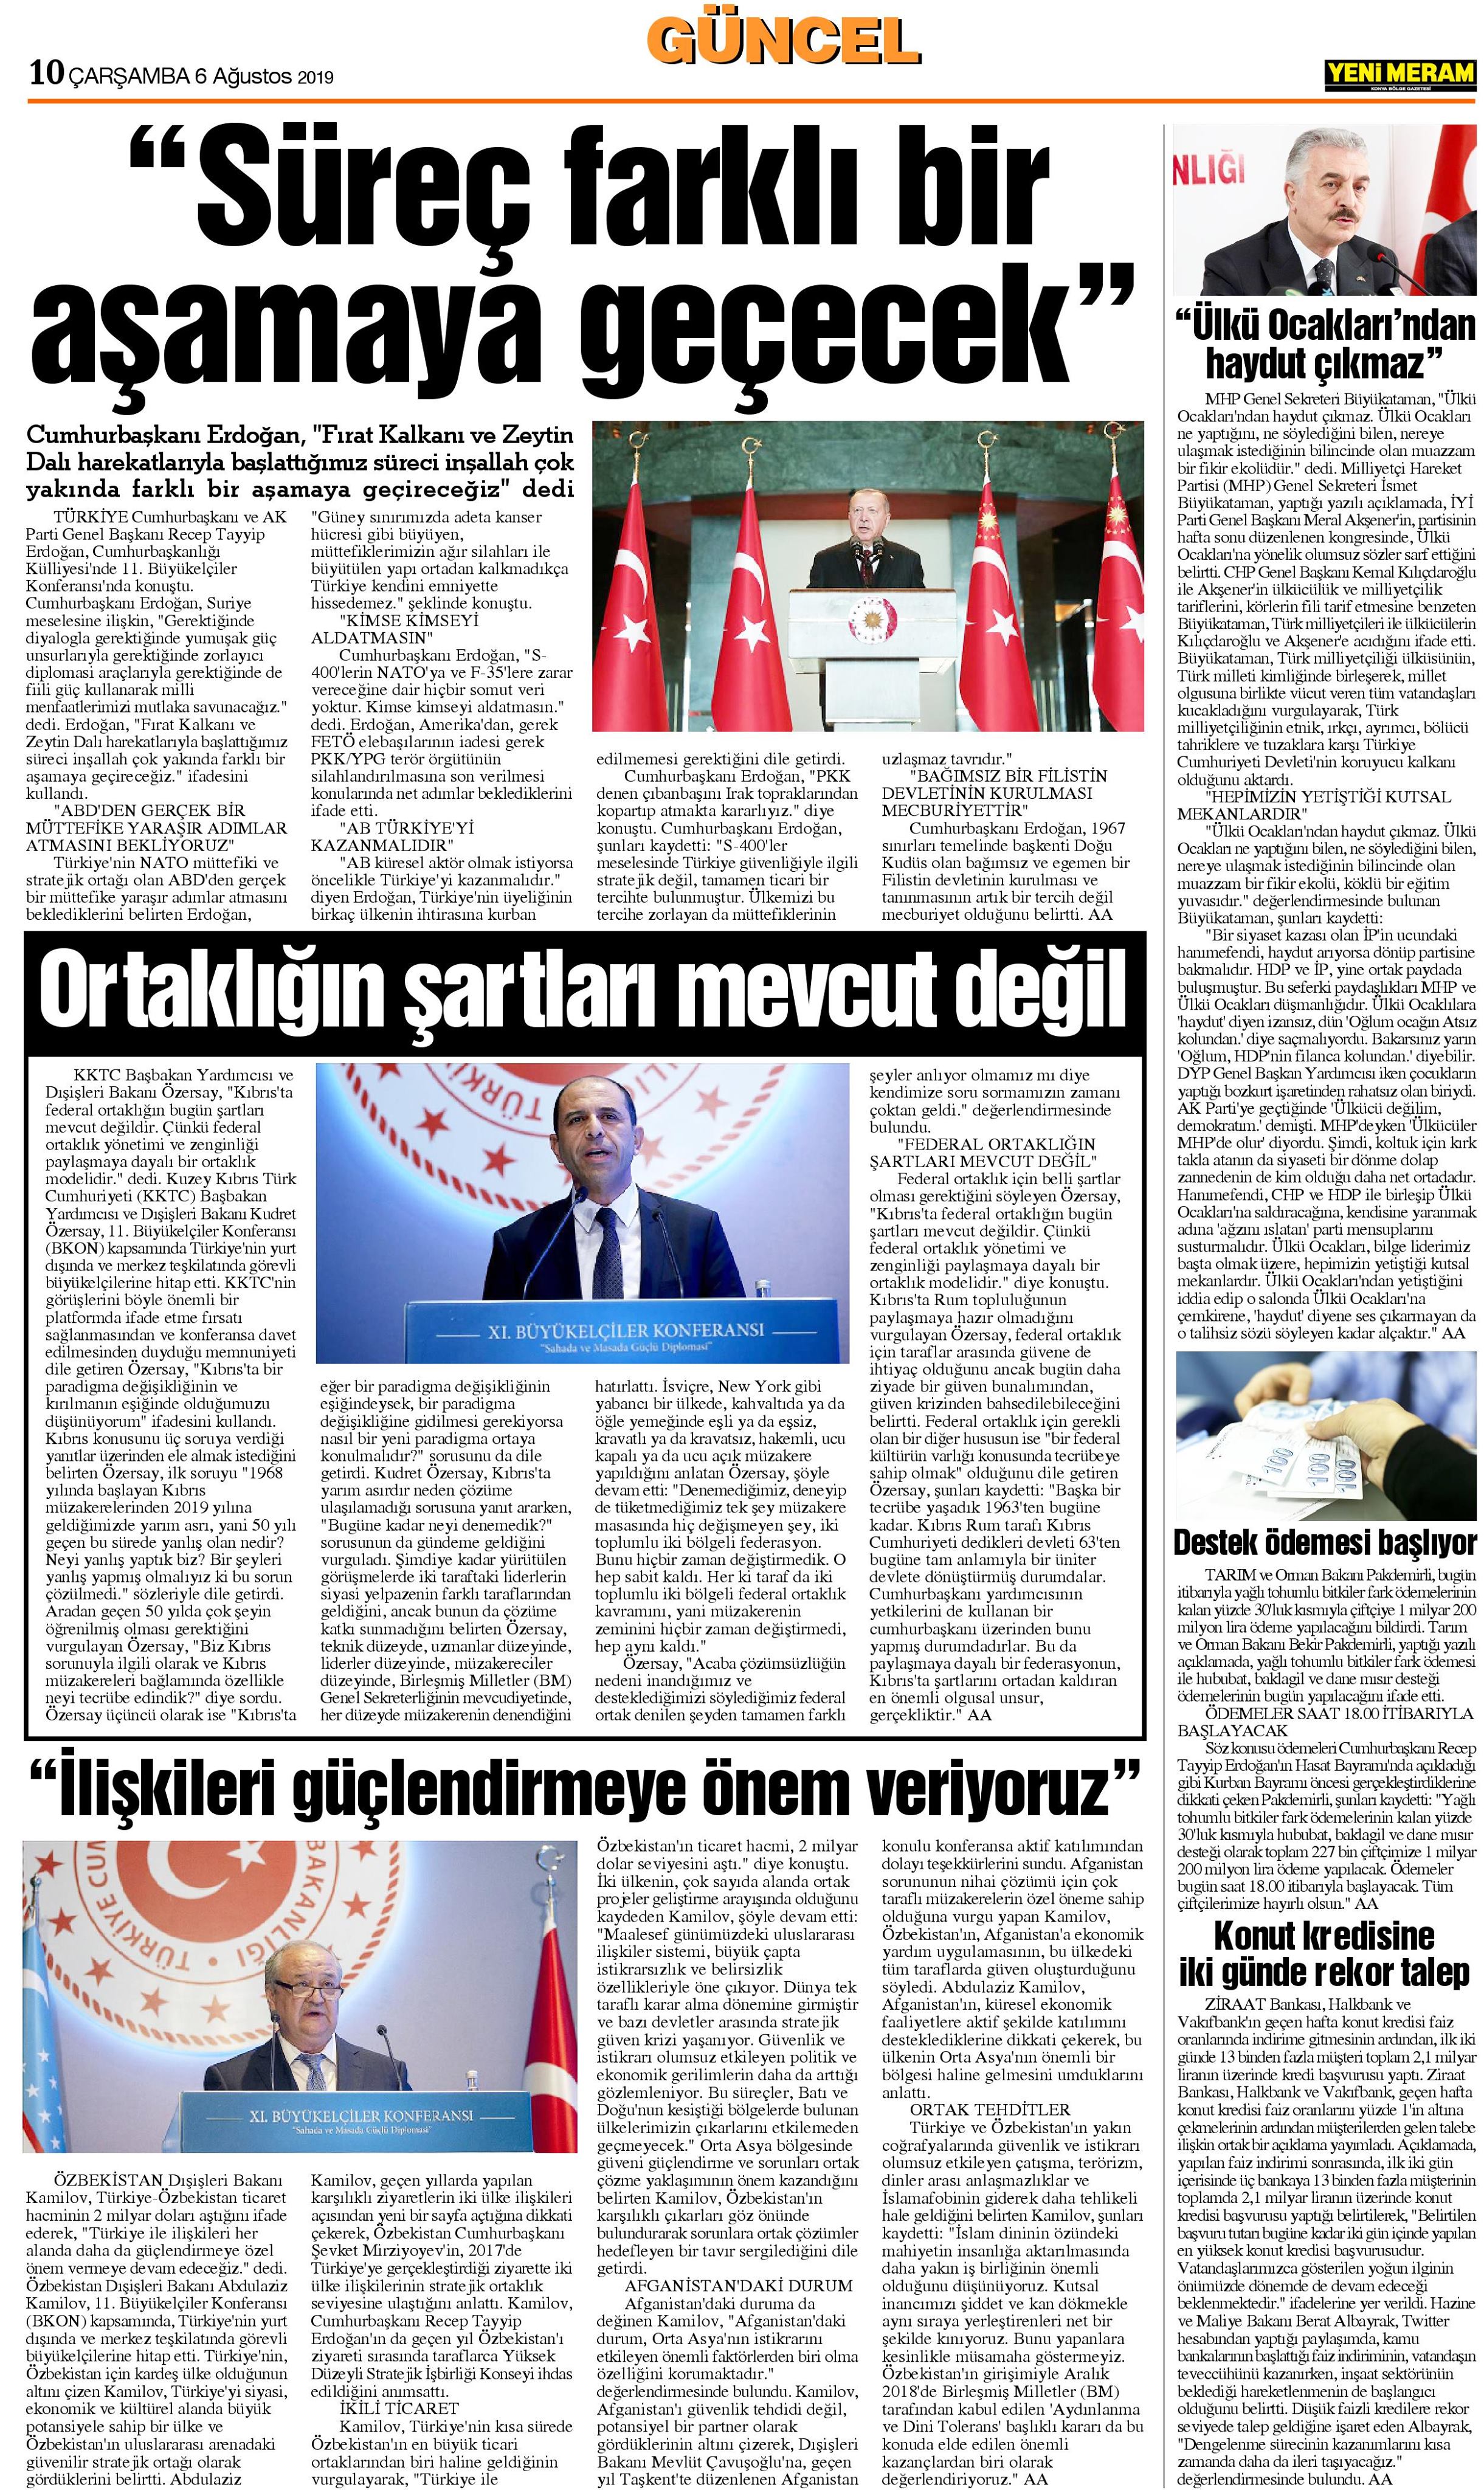 7 Ağustos 2019 Yeni Meram Gazetesi